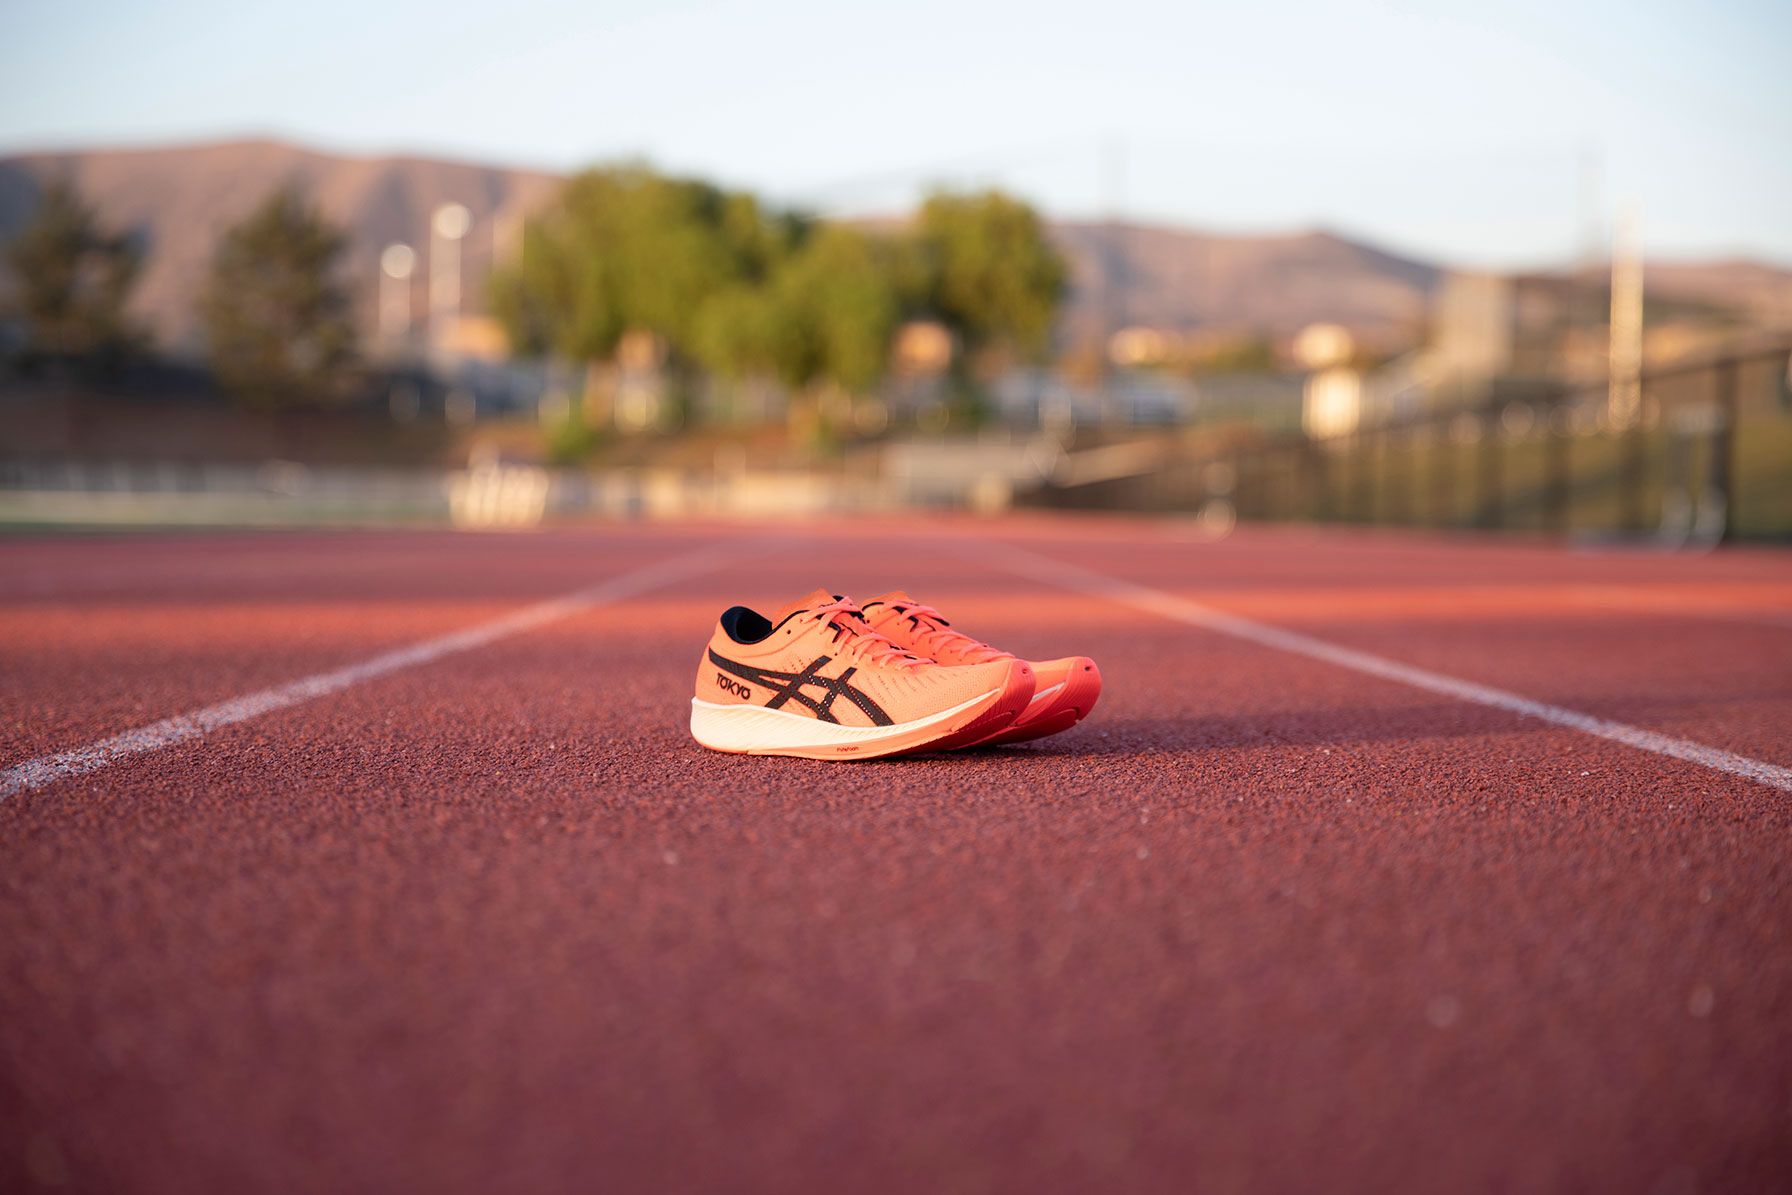 Normativa de zapatillas de atletismo - Máximas alturas permitidas